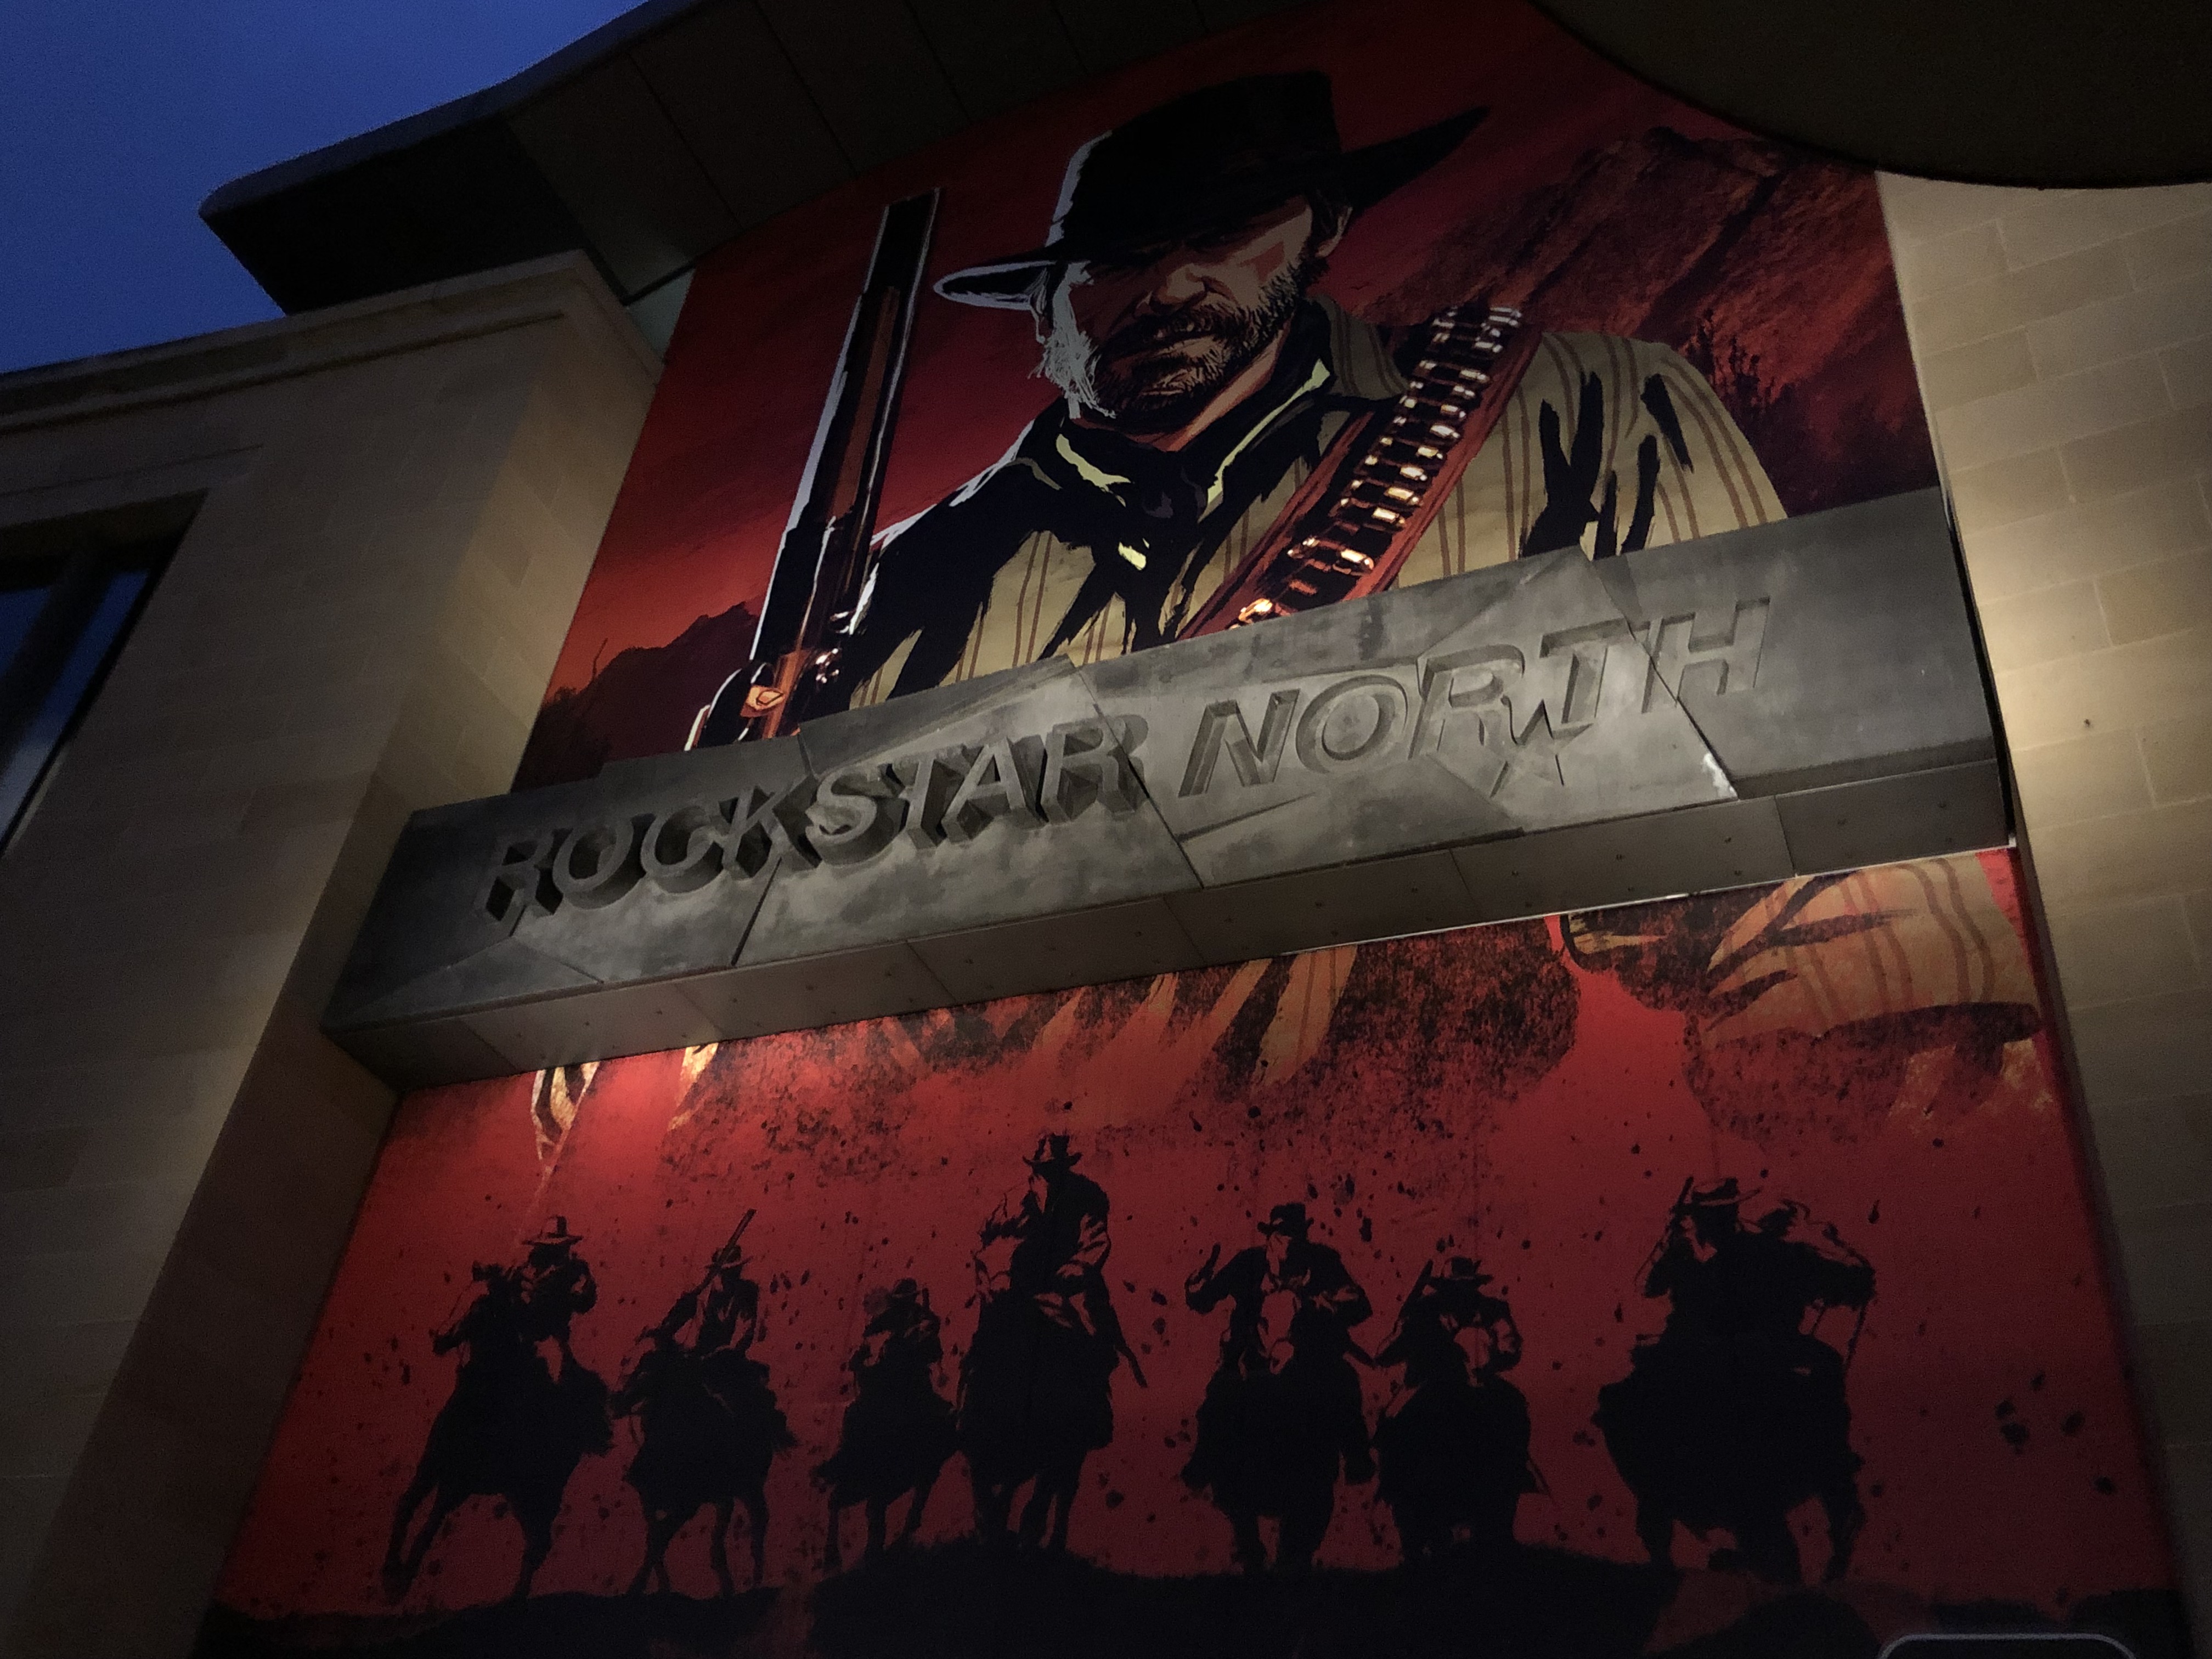 Updated Rockstar Games timeline releases : r/rockstar